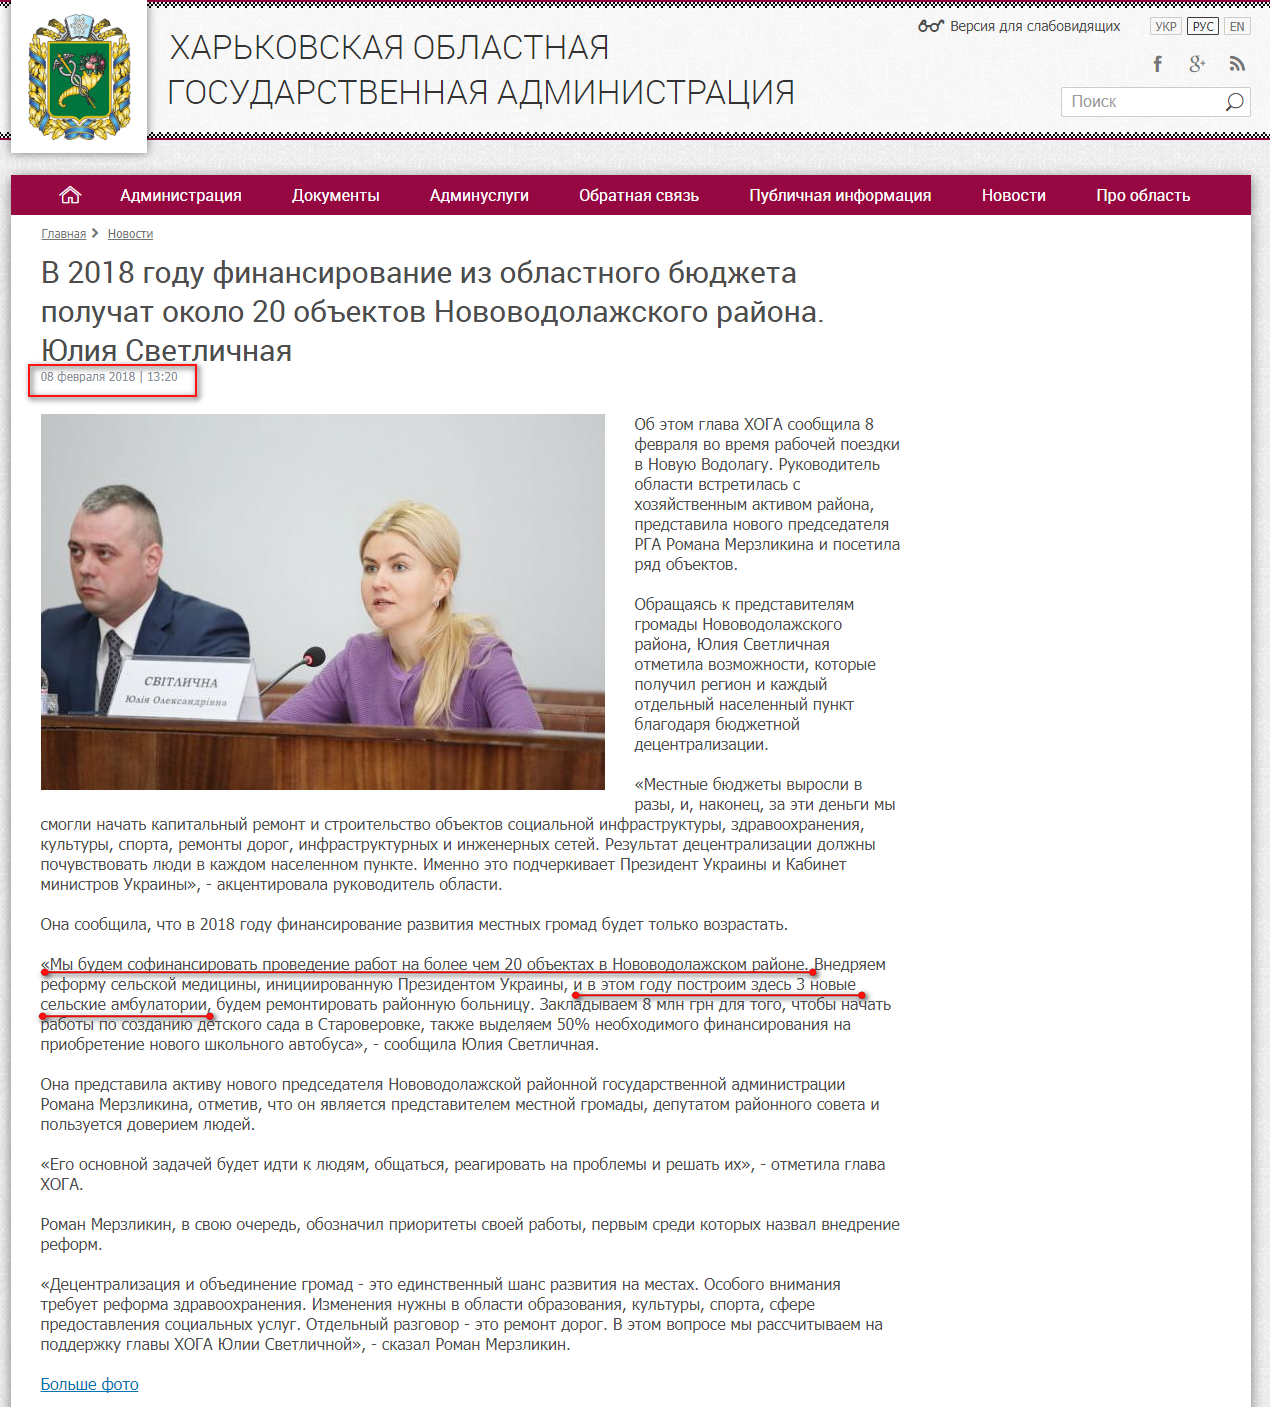 http://kharkivoda.gov.ua/ru/news/91072